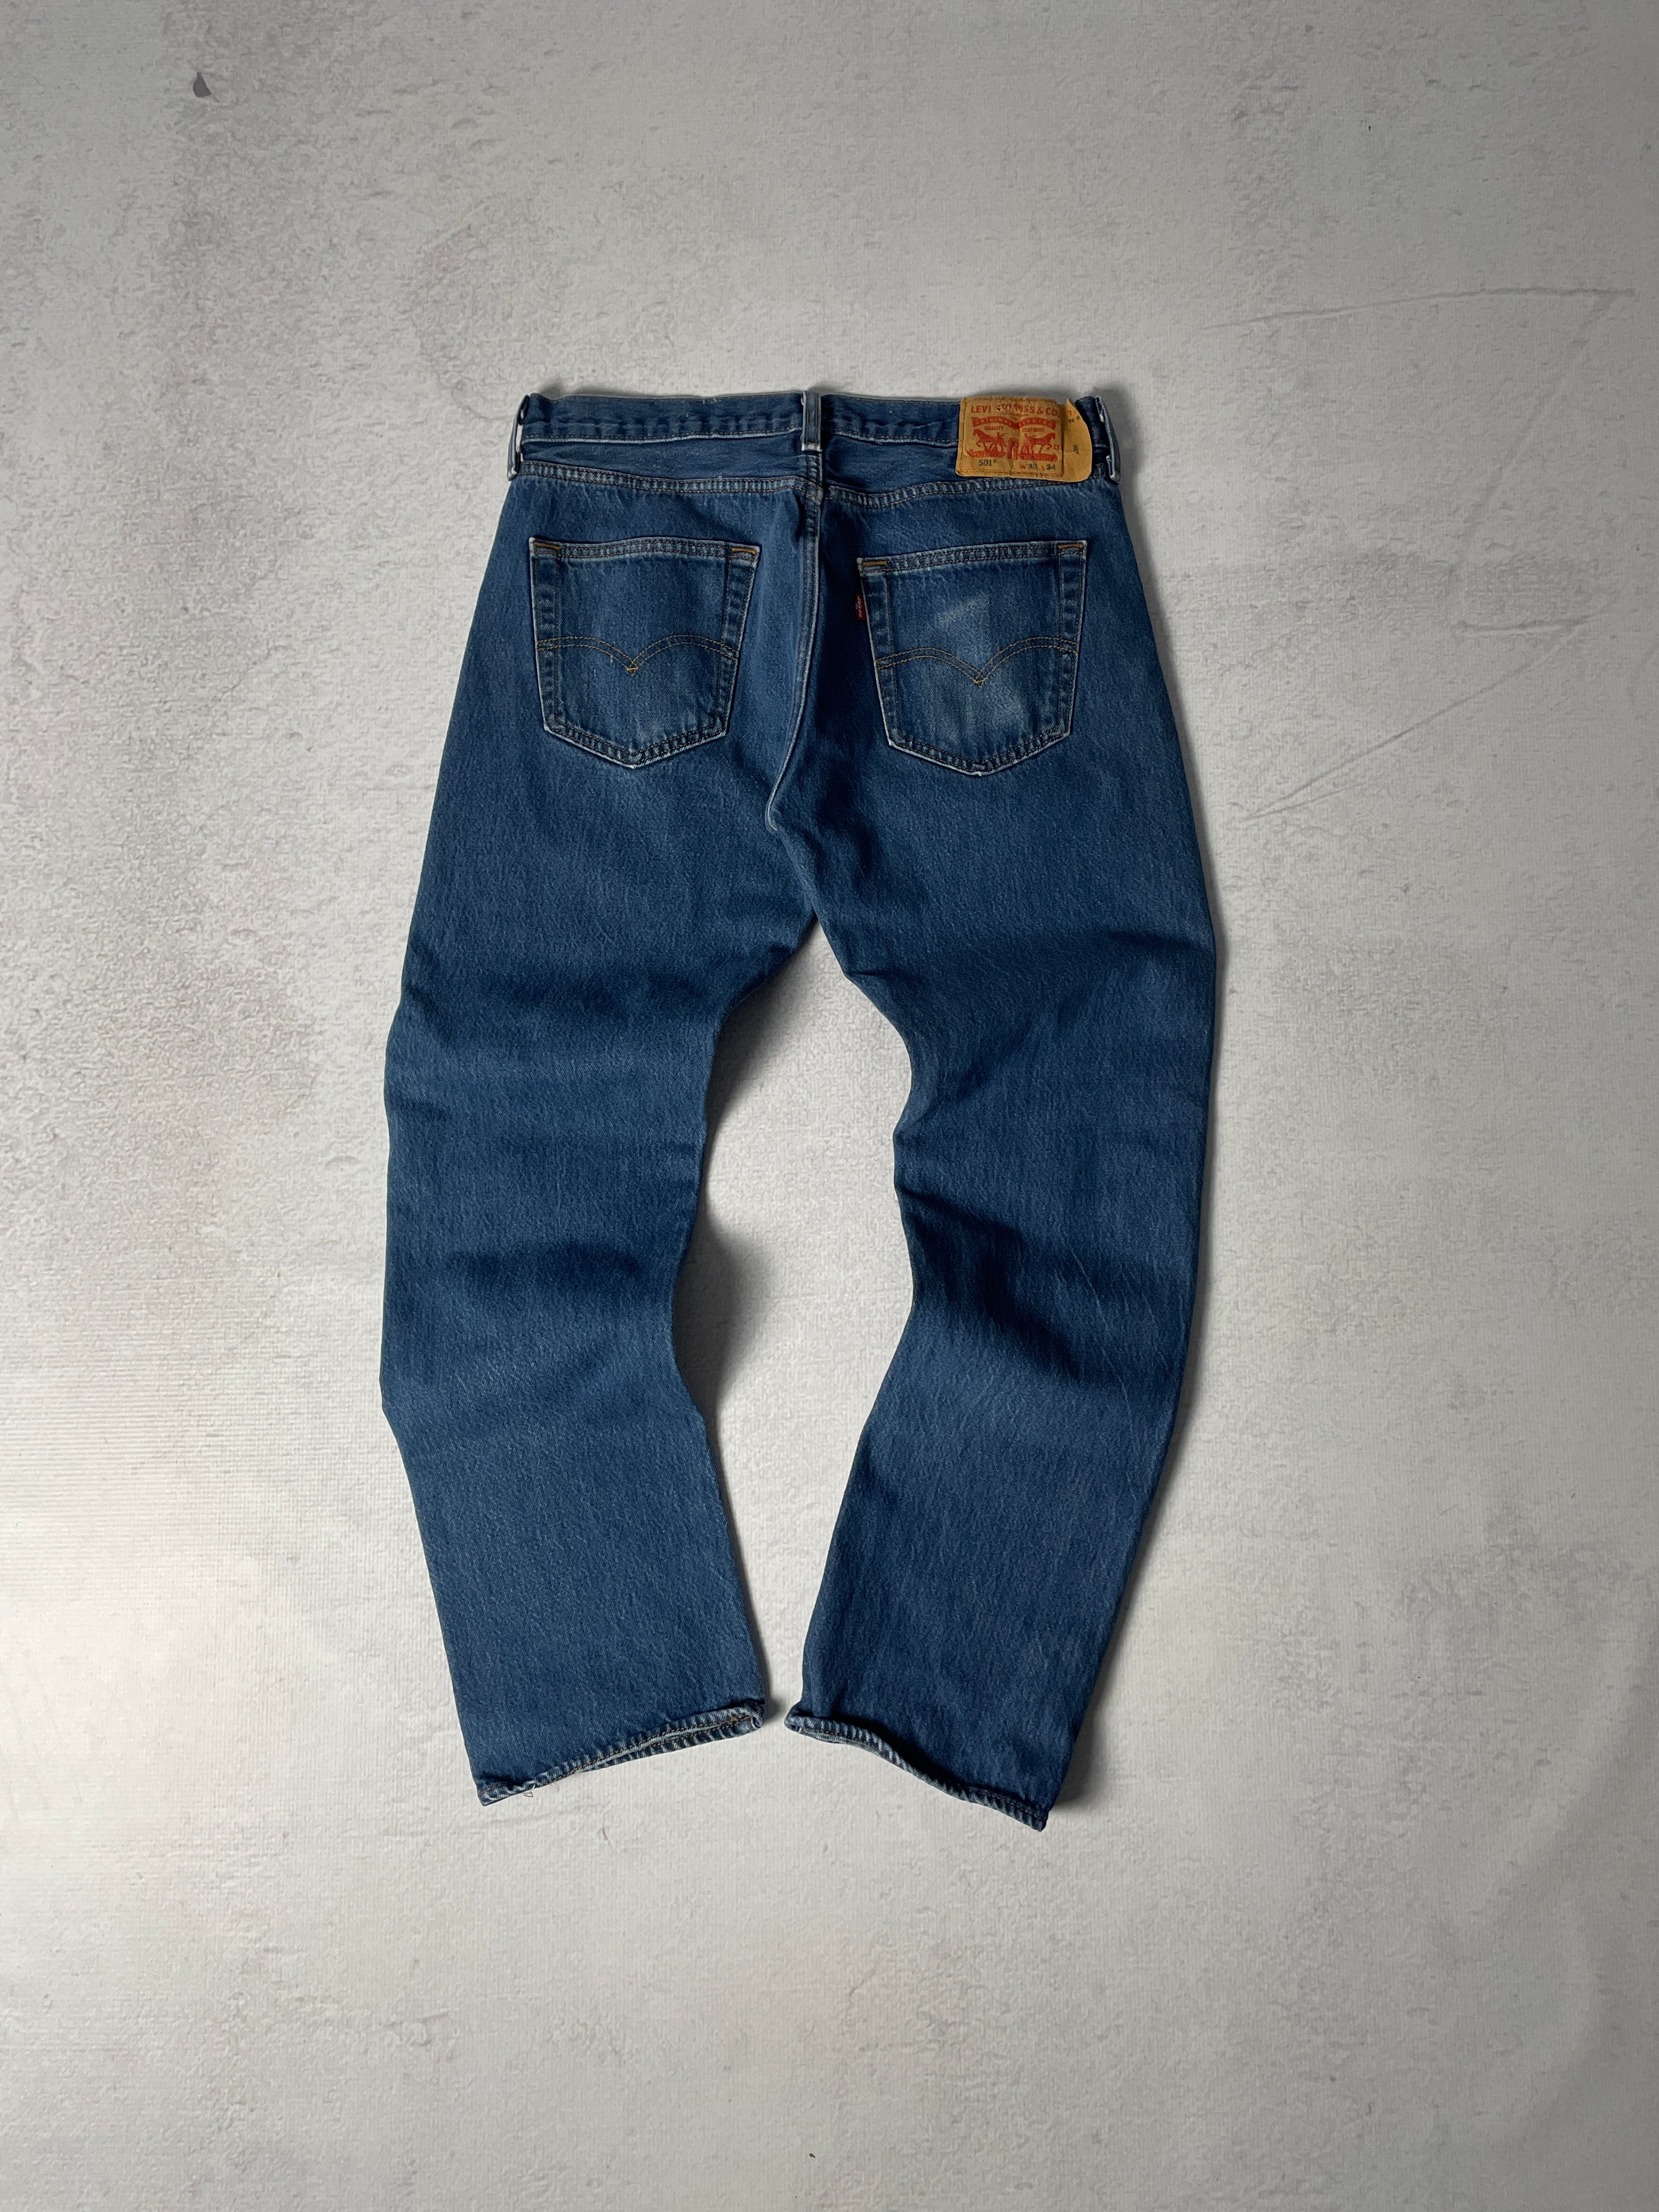 Vintage Levis 501 Jeans - Men's 35 x 34